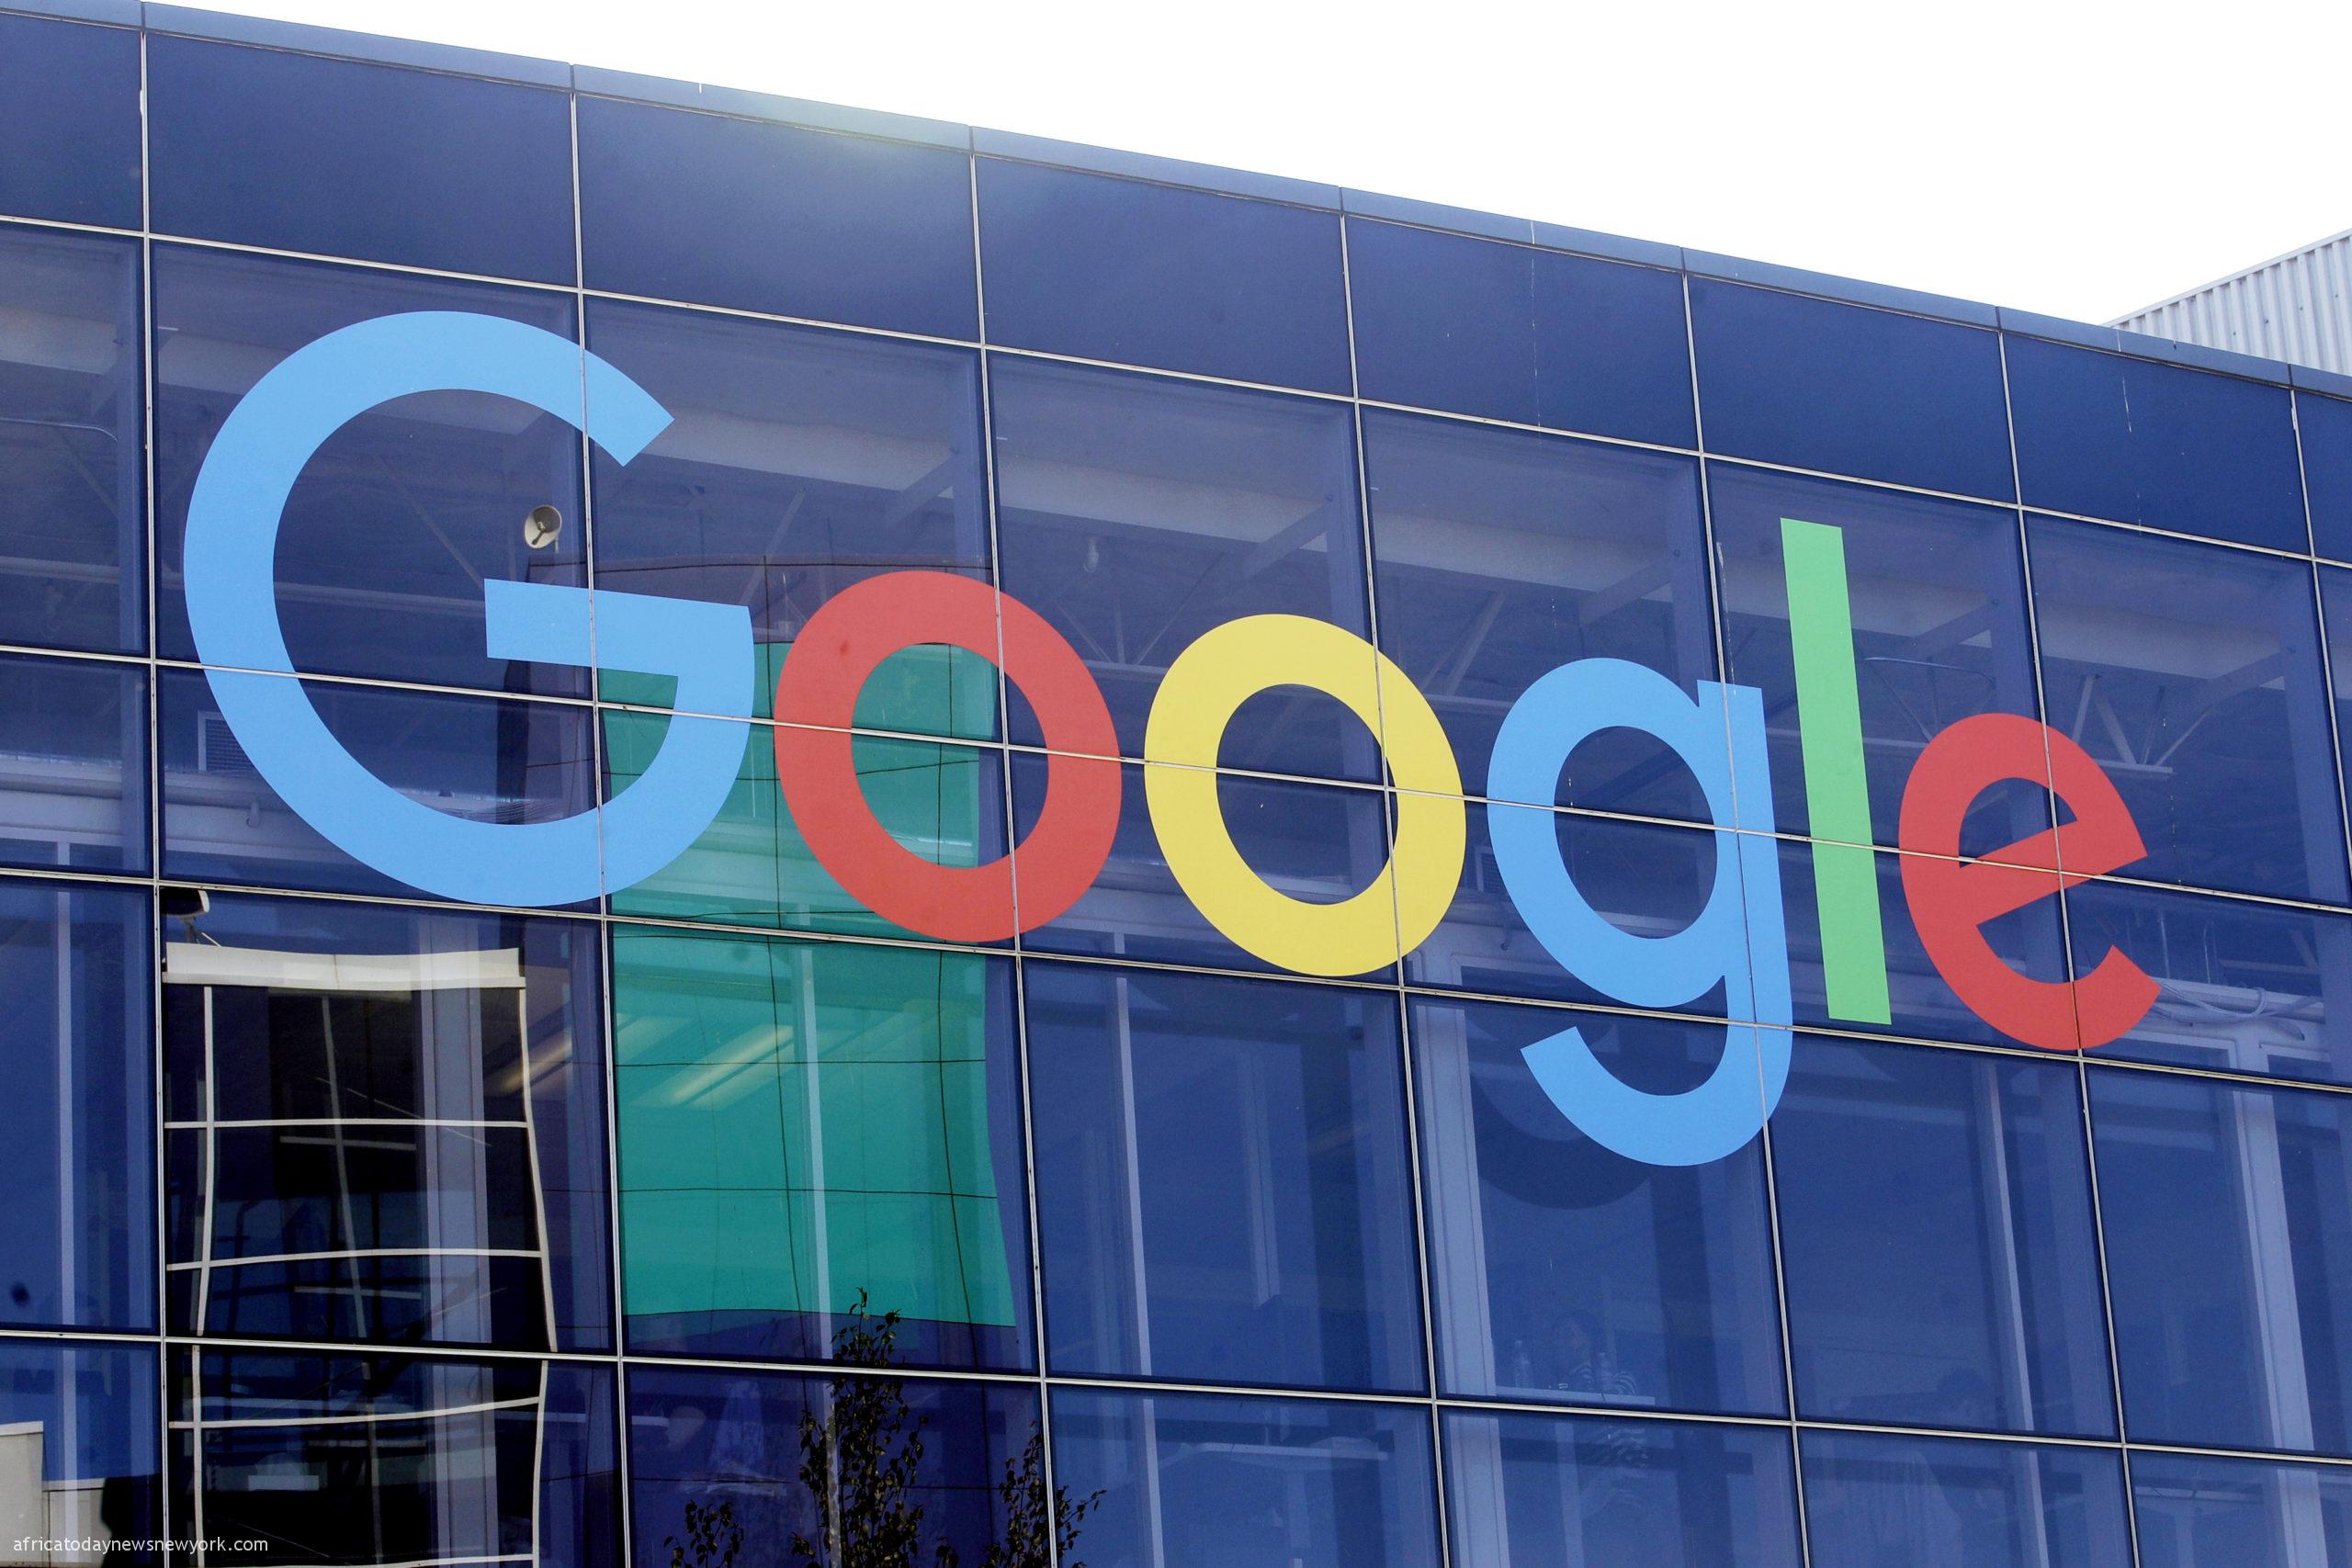 Google Slashes 12,000 Jobs As Tech Woes Bite Again